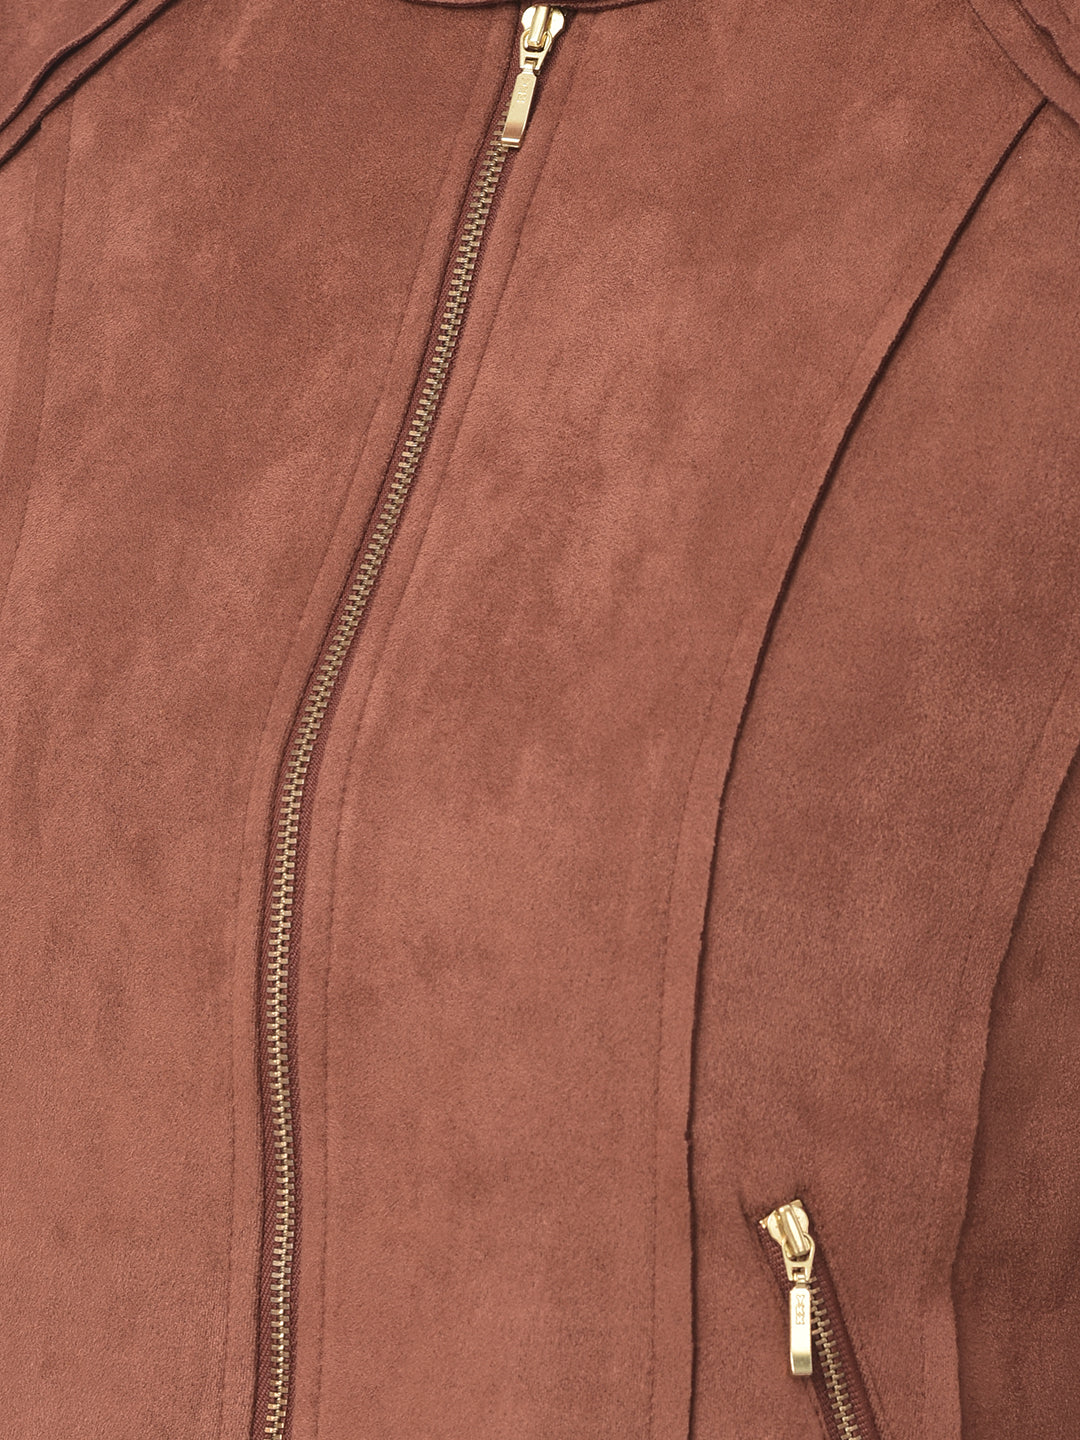 Brown Full Sleeve Straight Zip Jacket